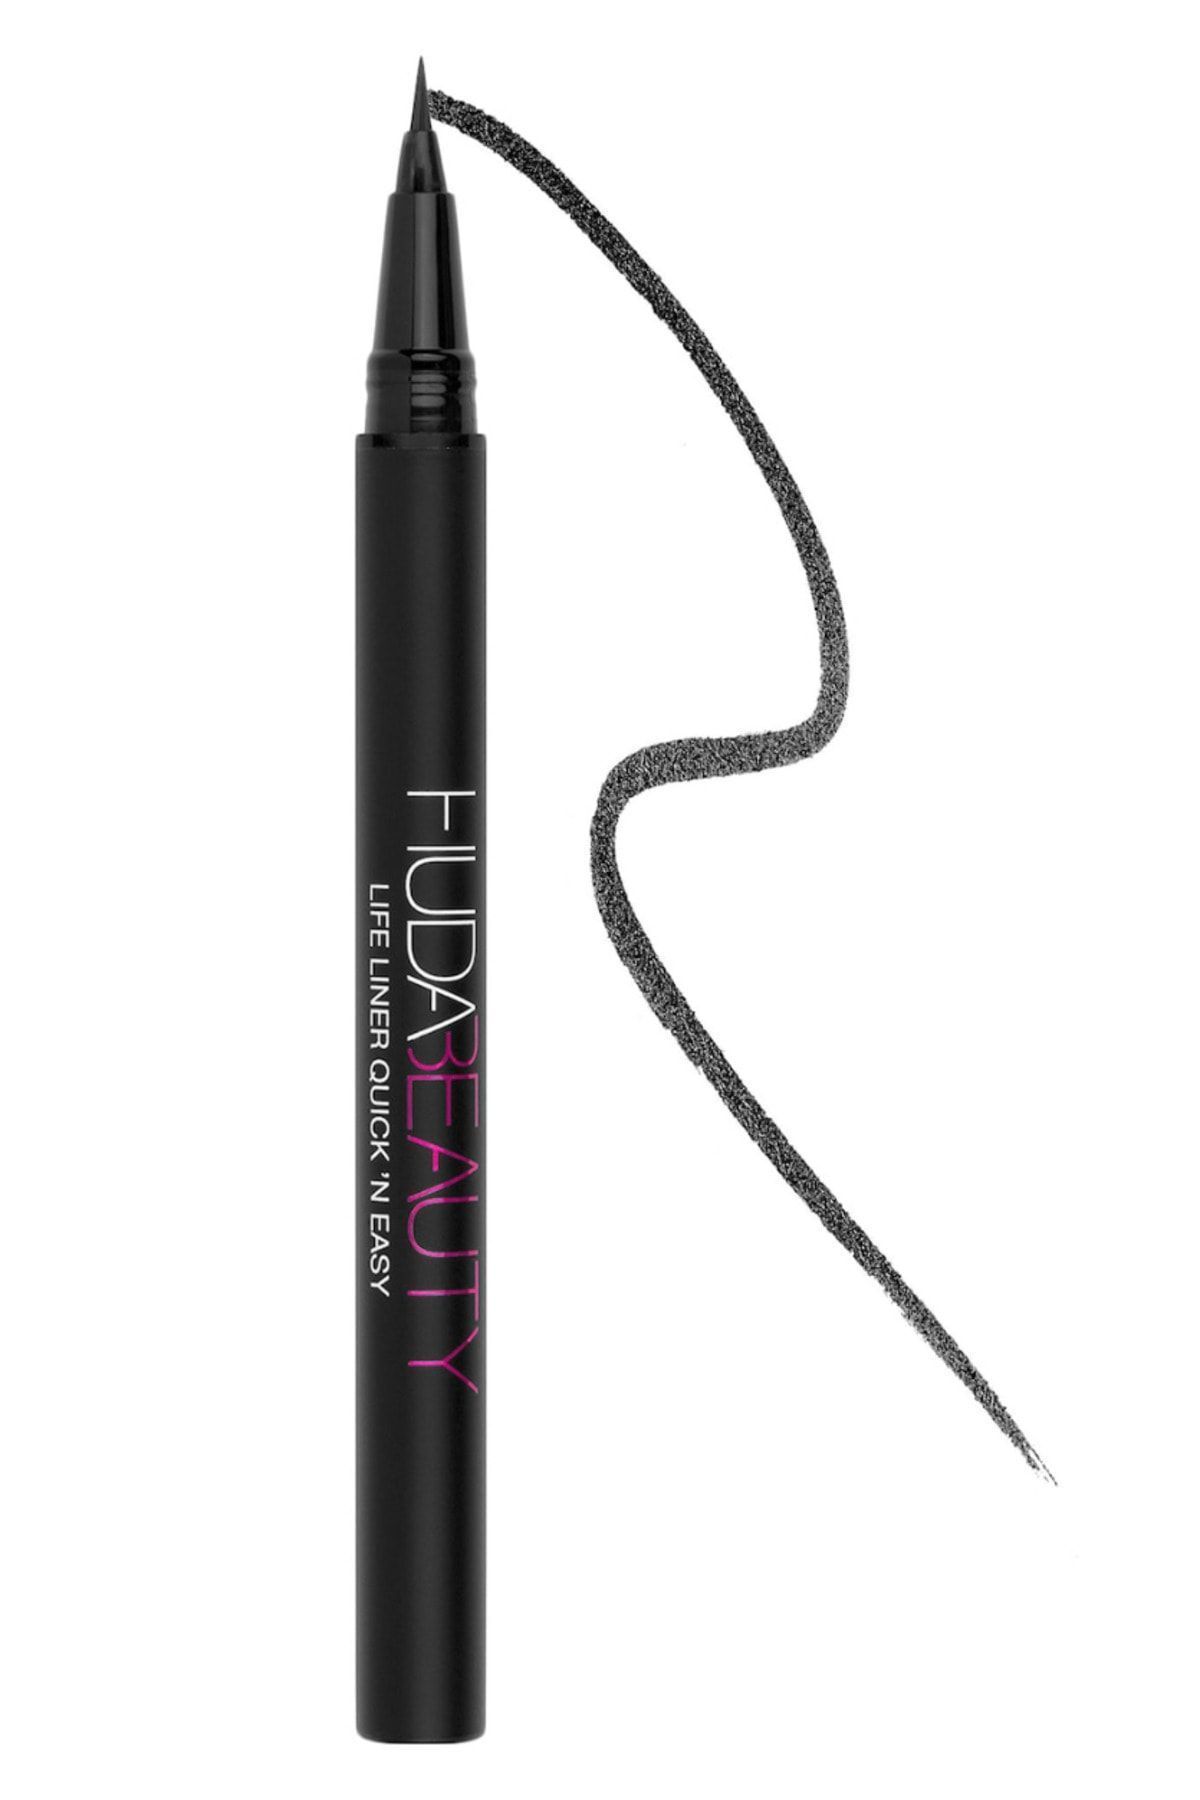 Huda Beauty Quick ‘N Easy Precision Liquid Liner